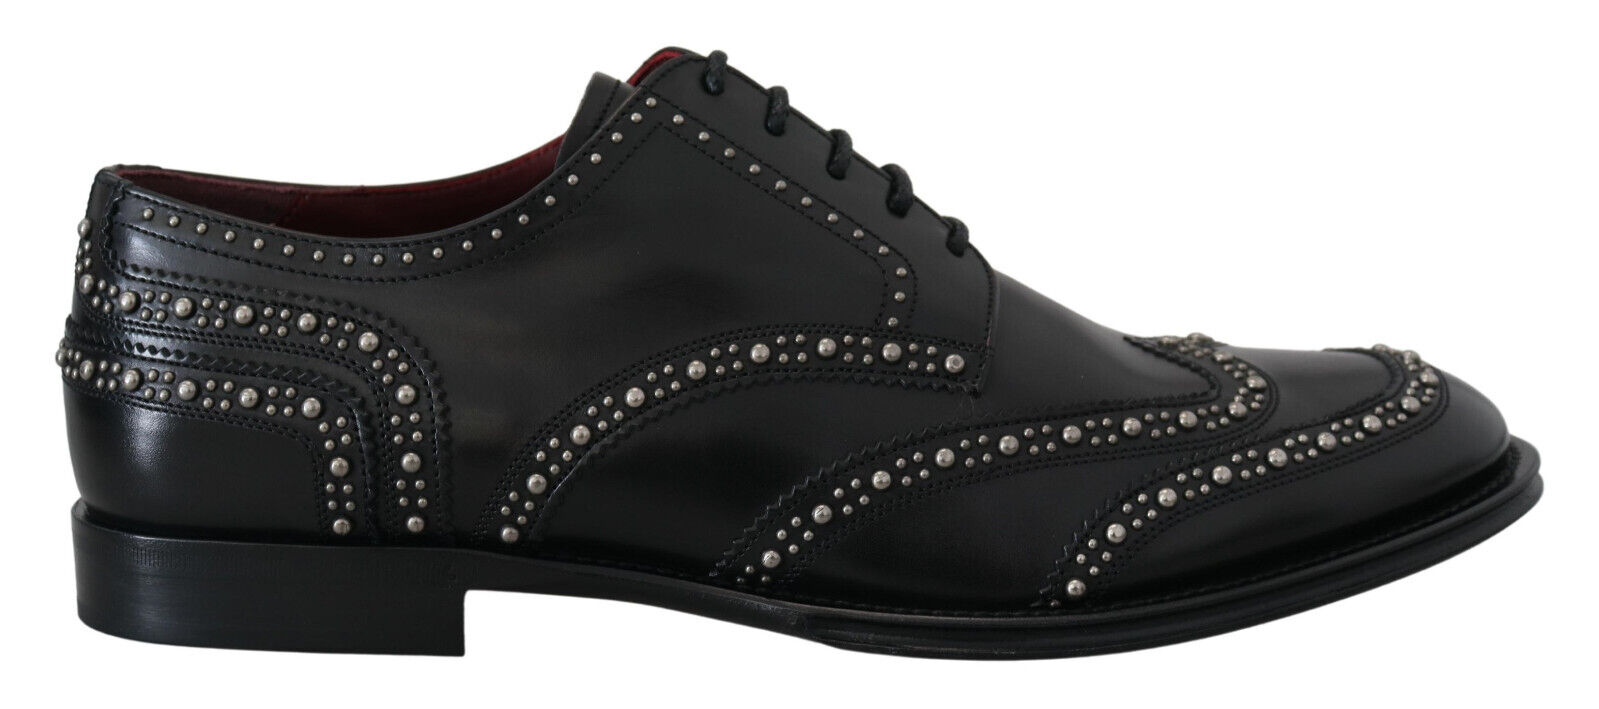 Туфли DOLCE & GABBANA Черное кожаное платье дерби с шипами EU41,5 / US8,5 Рекомендуемая розничная цена 1200 долларов США